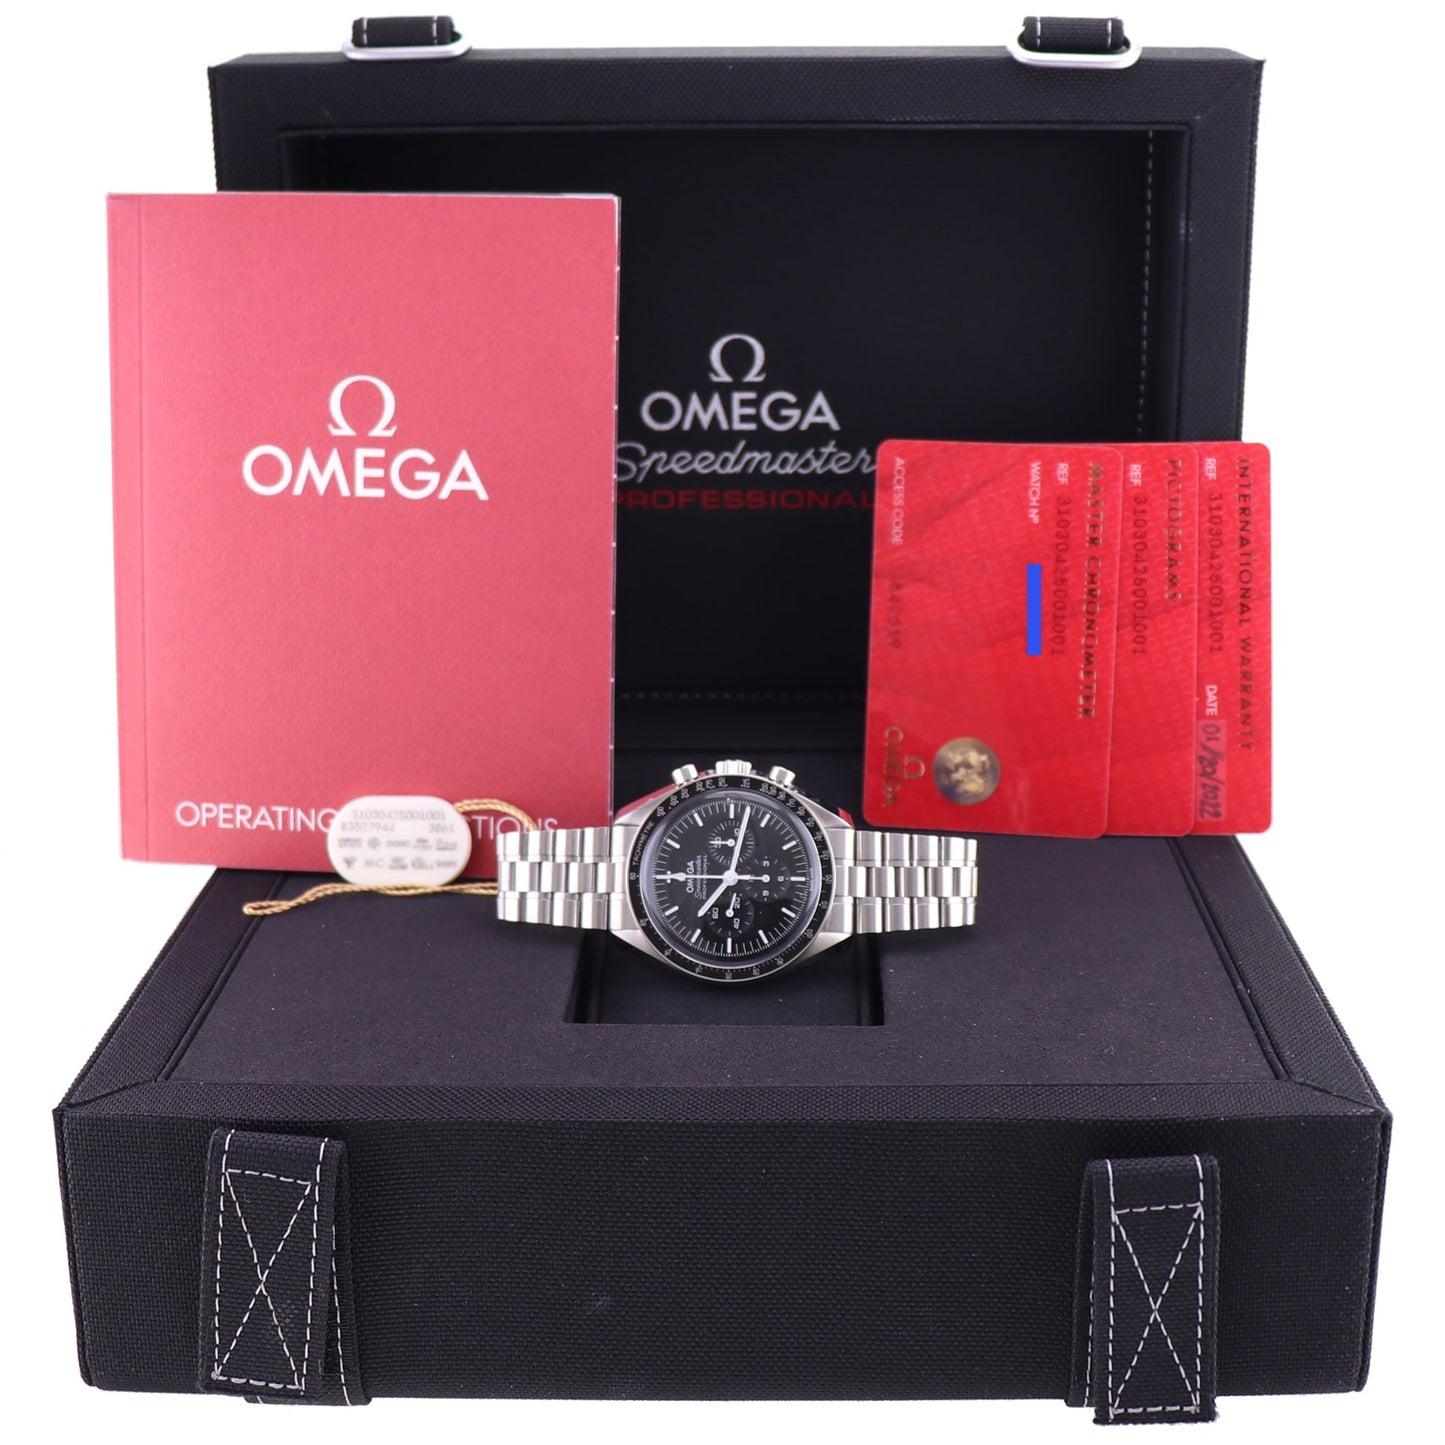 2022 PAPERS Omega Speedmaster 310.30.42.50.01.001 Hesalite Steel 42mm Watch